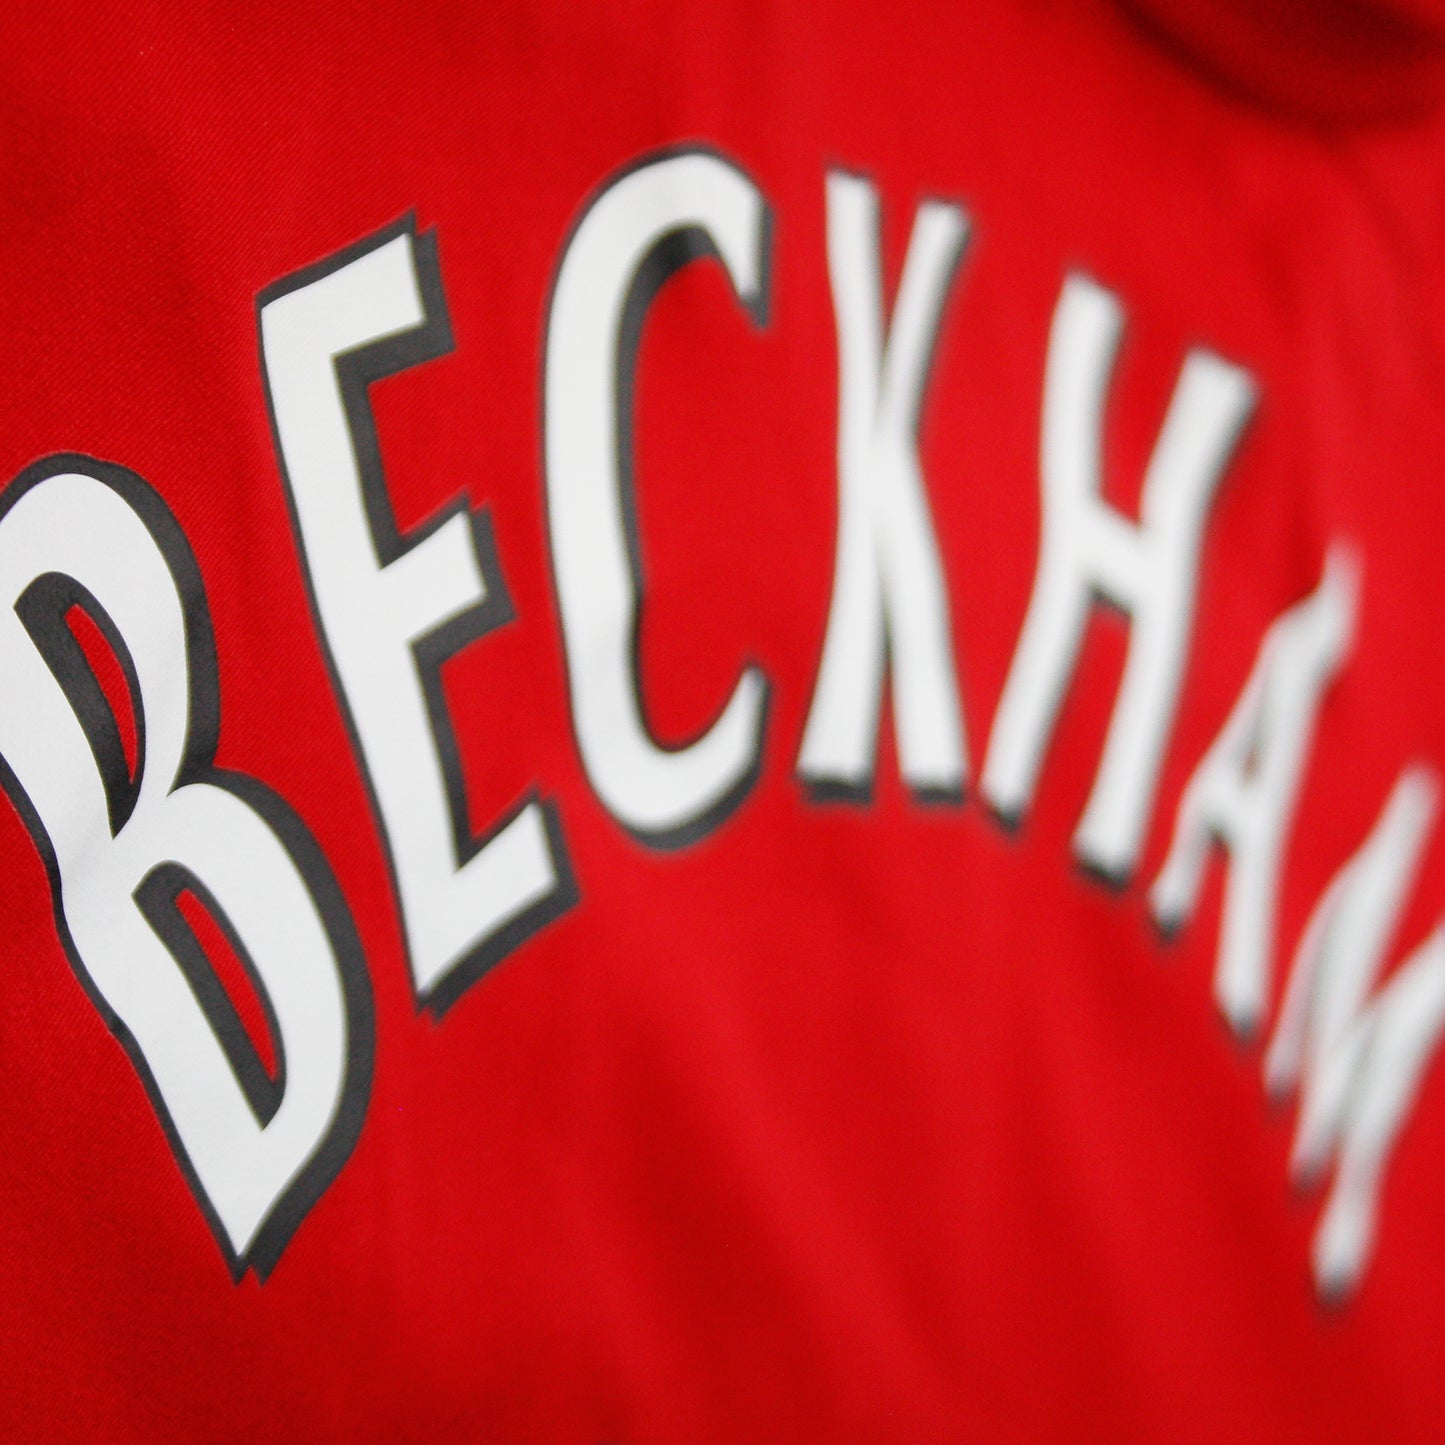 Manchester United 02/03 • Home Shirt • L • Beckham #7